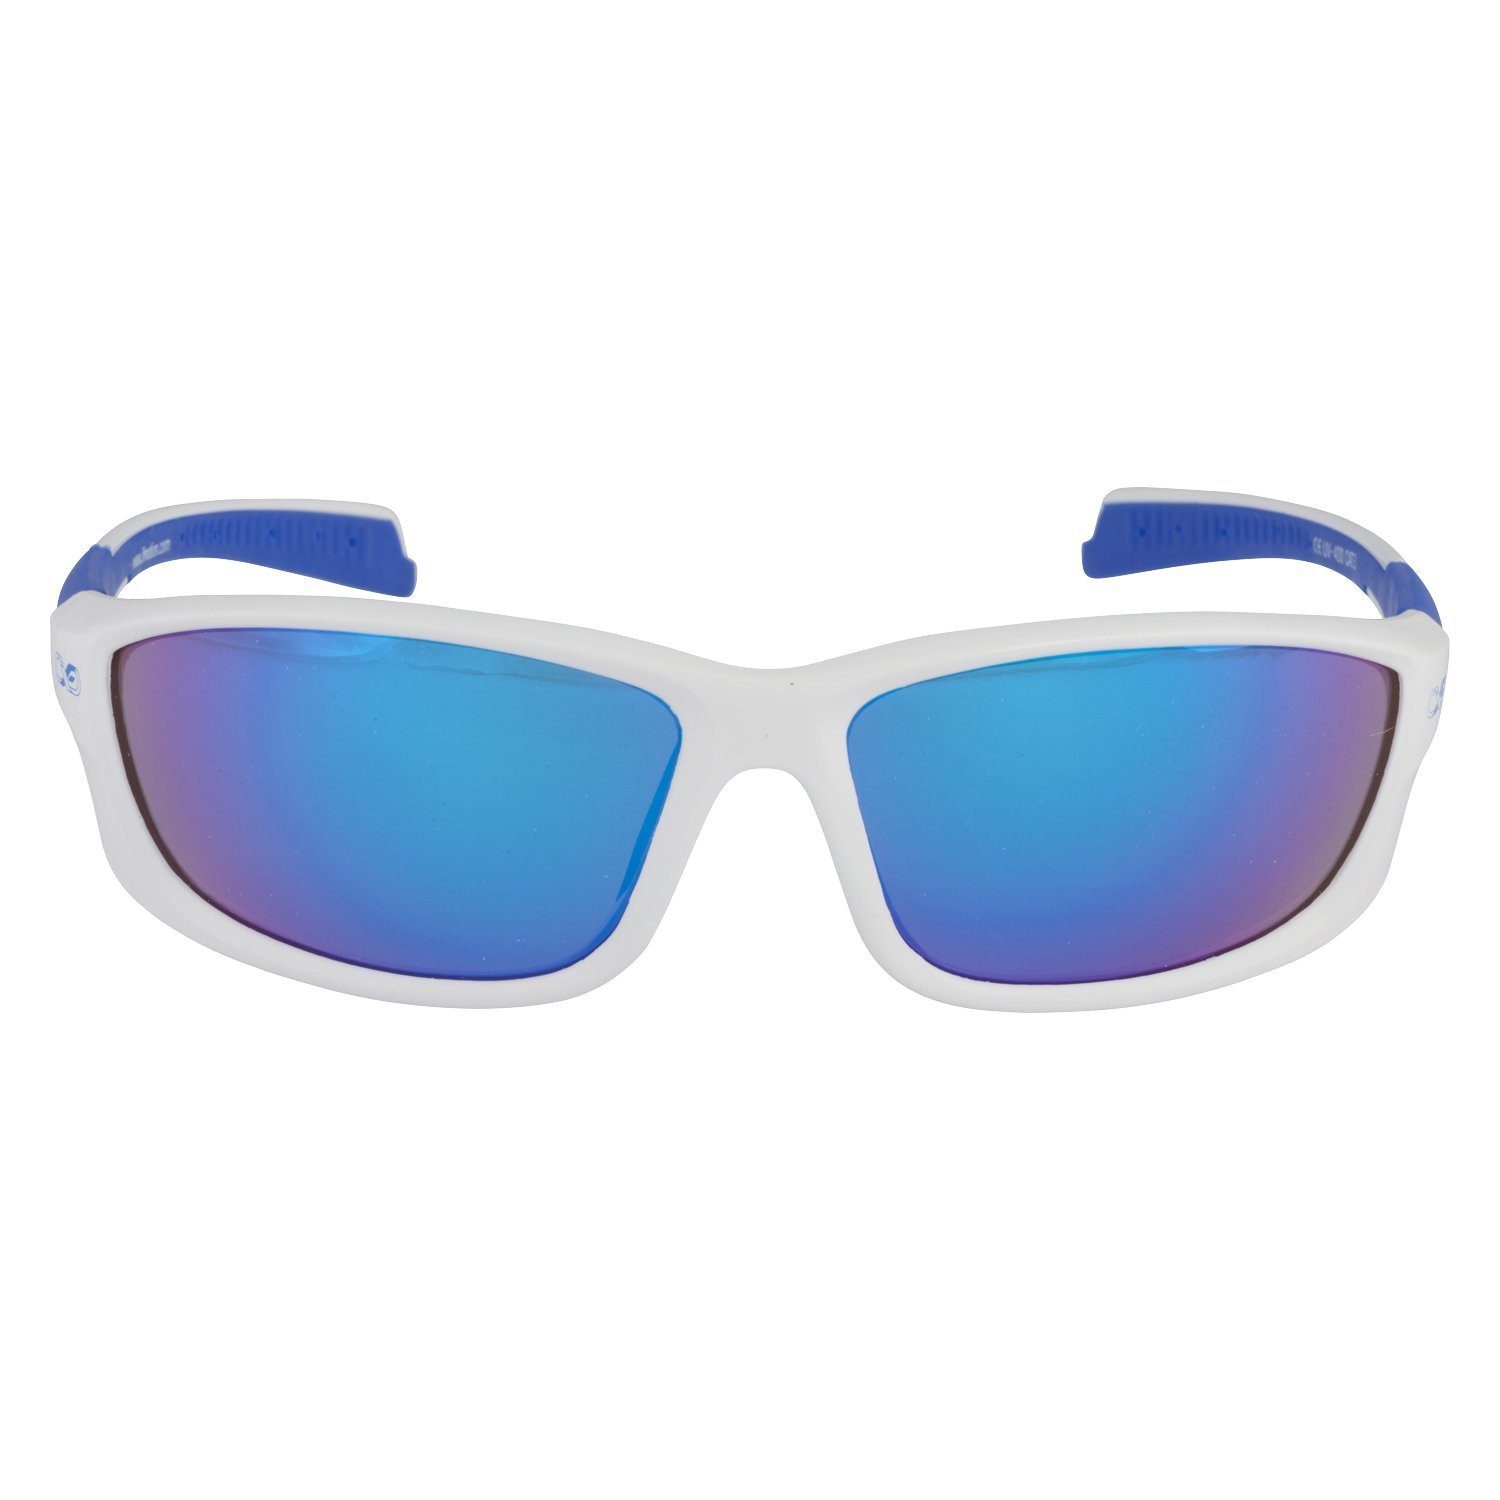 Viwanda Sonnenbrille Infinite in 3 Farben Aufbewahrungsbeutel Reinigungstuch) (Mit Sportbrille / Eins